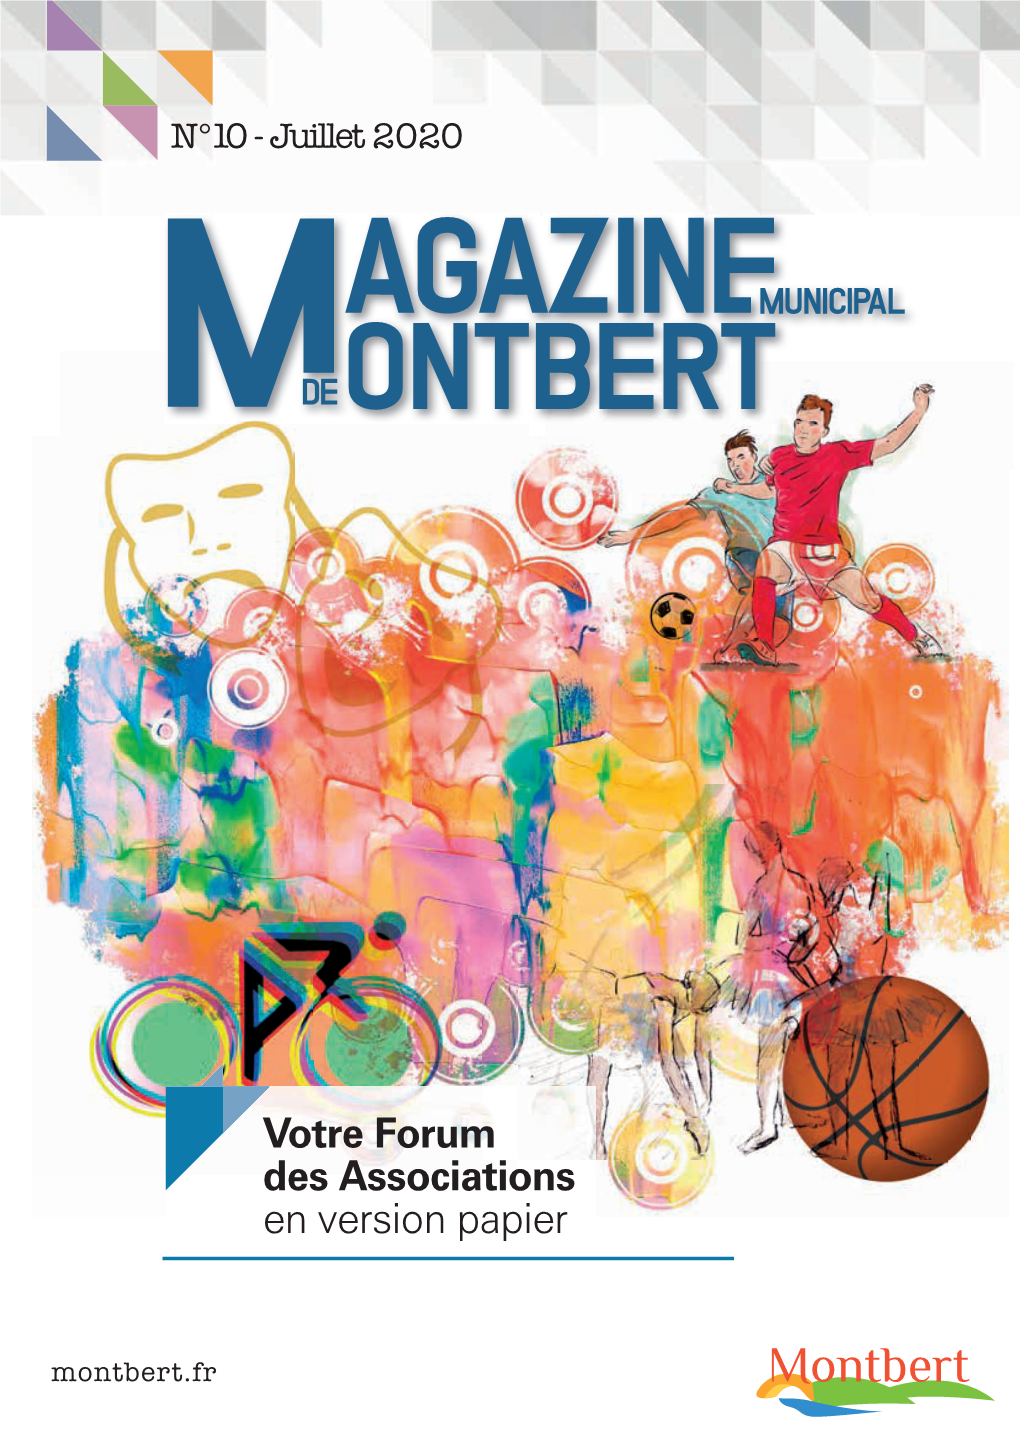 01 Magazine Municipal De Juillet 2020- Montbert